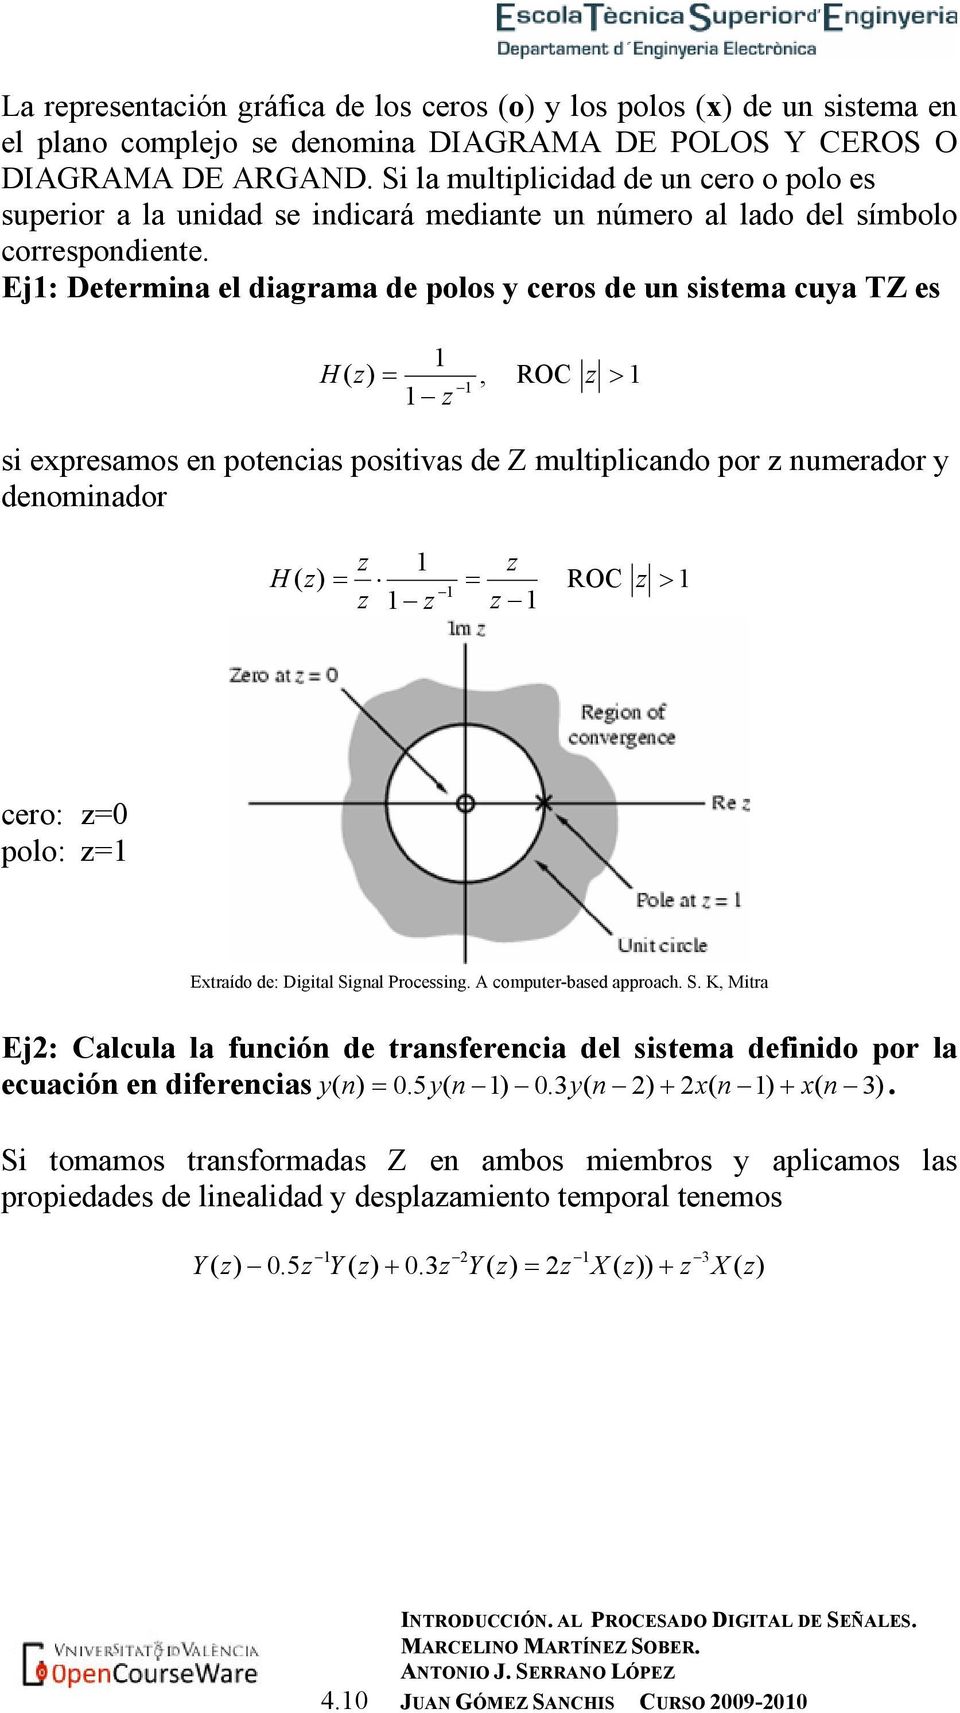 Ej: Determia el diagrama de polos y ceros de u sistema cuya TZ es H, ROC > si expresamos e potecias positivas de Z multiplicado por umerador y deomiador H ROC > cero: polo: Extraído de: